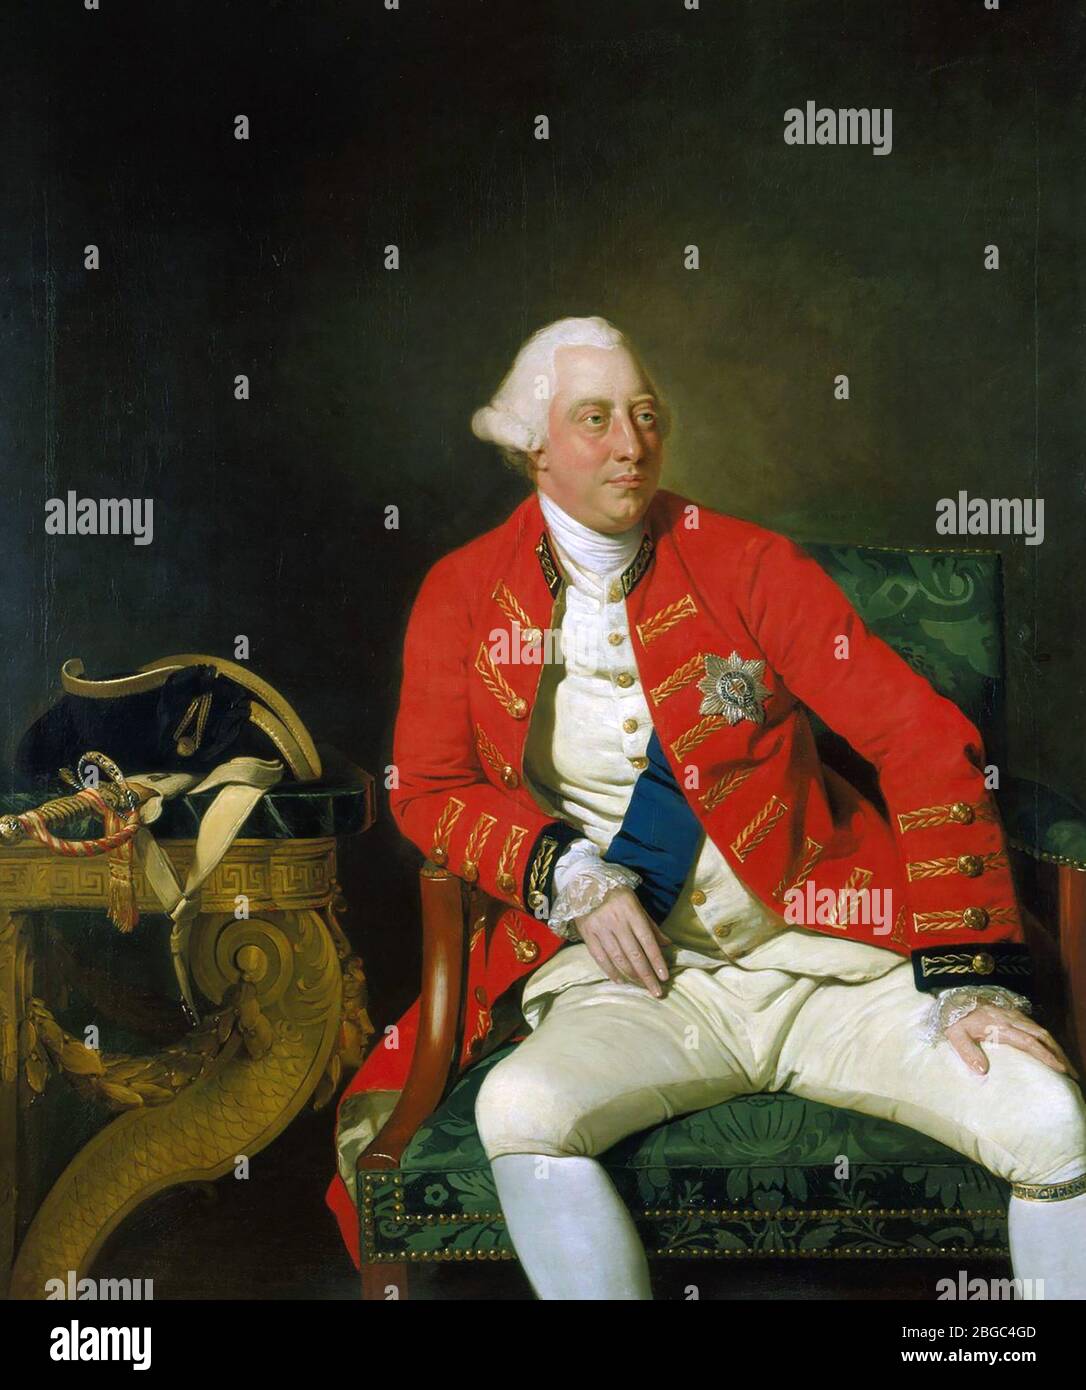 KÖNIG GEORG III. Von Großbritannien und Nordirland, gemalt von Johann Zoffany im Jahre 1771. Stockfoto